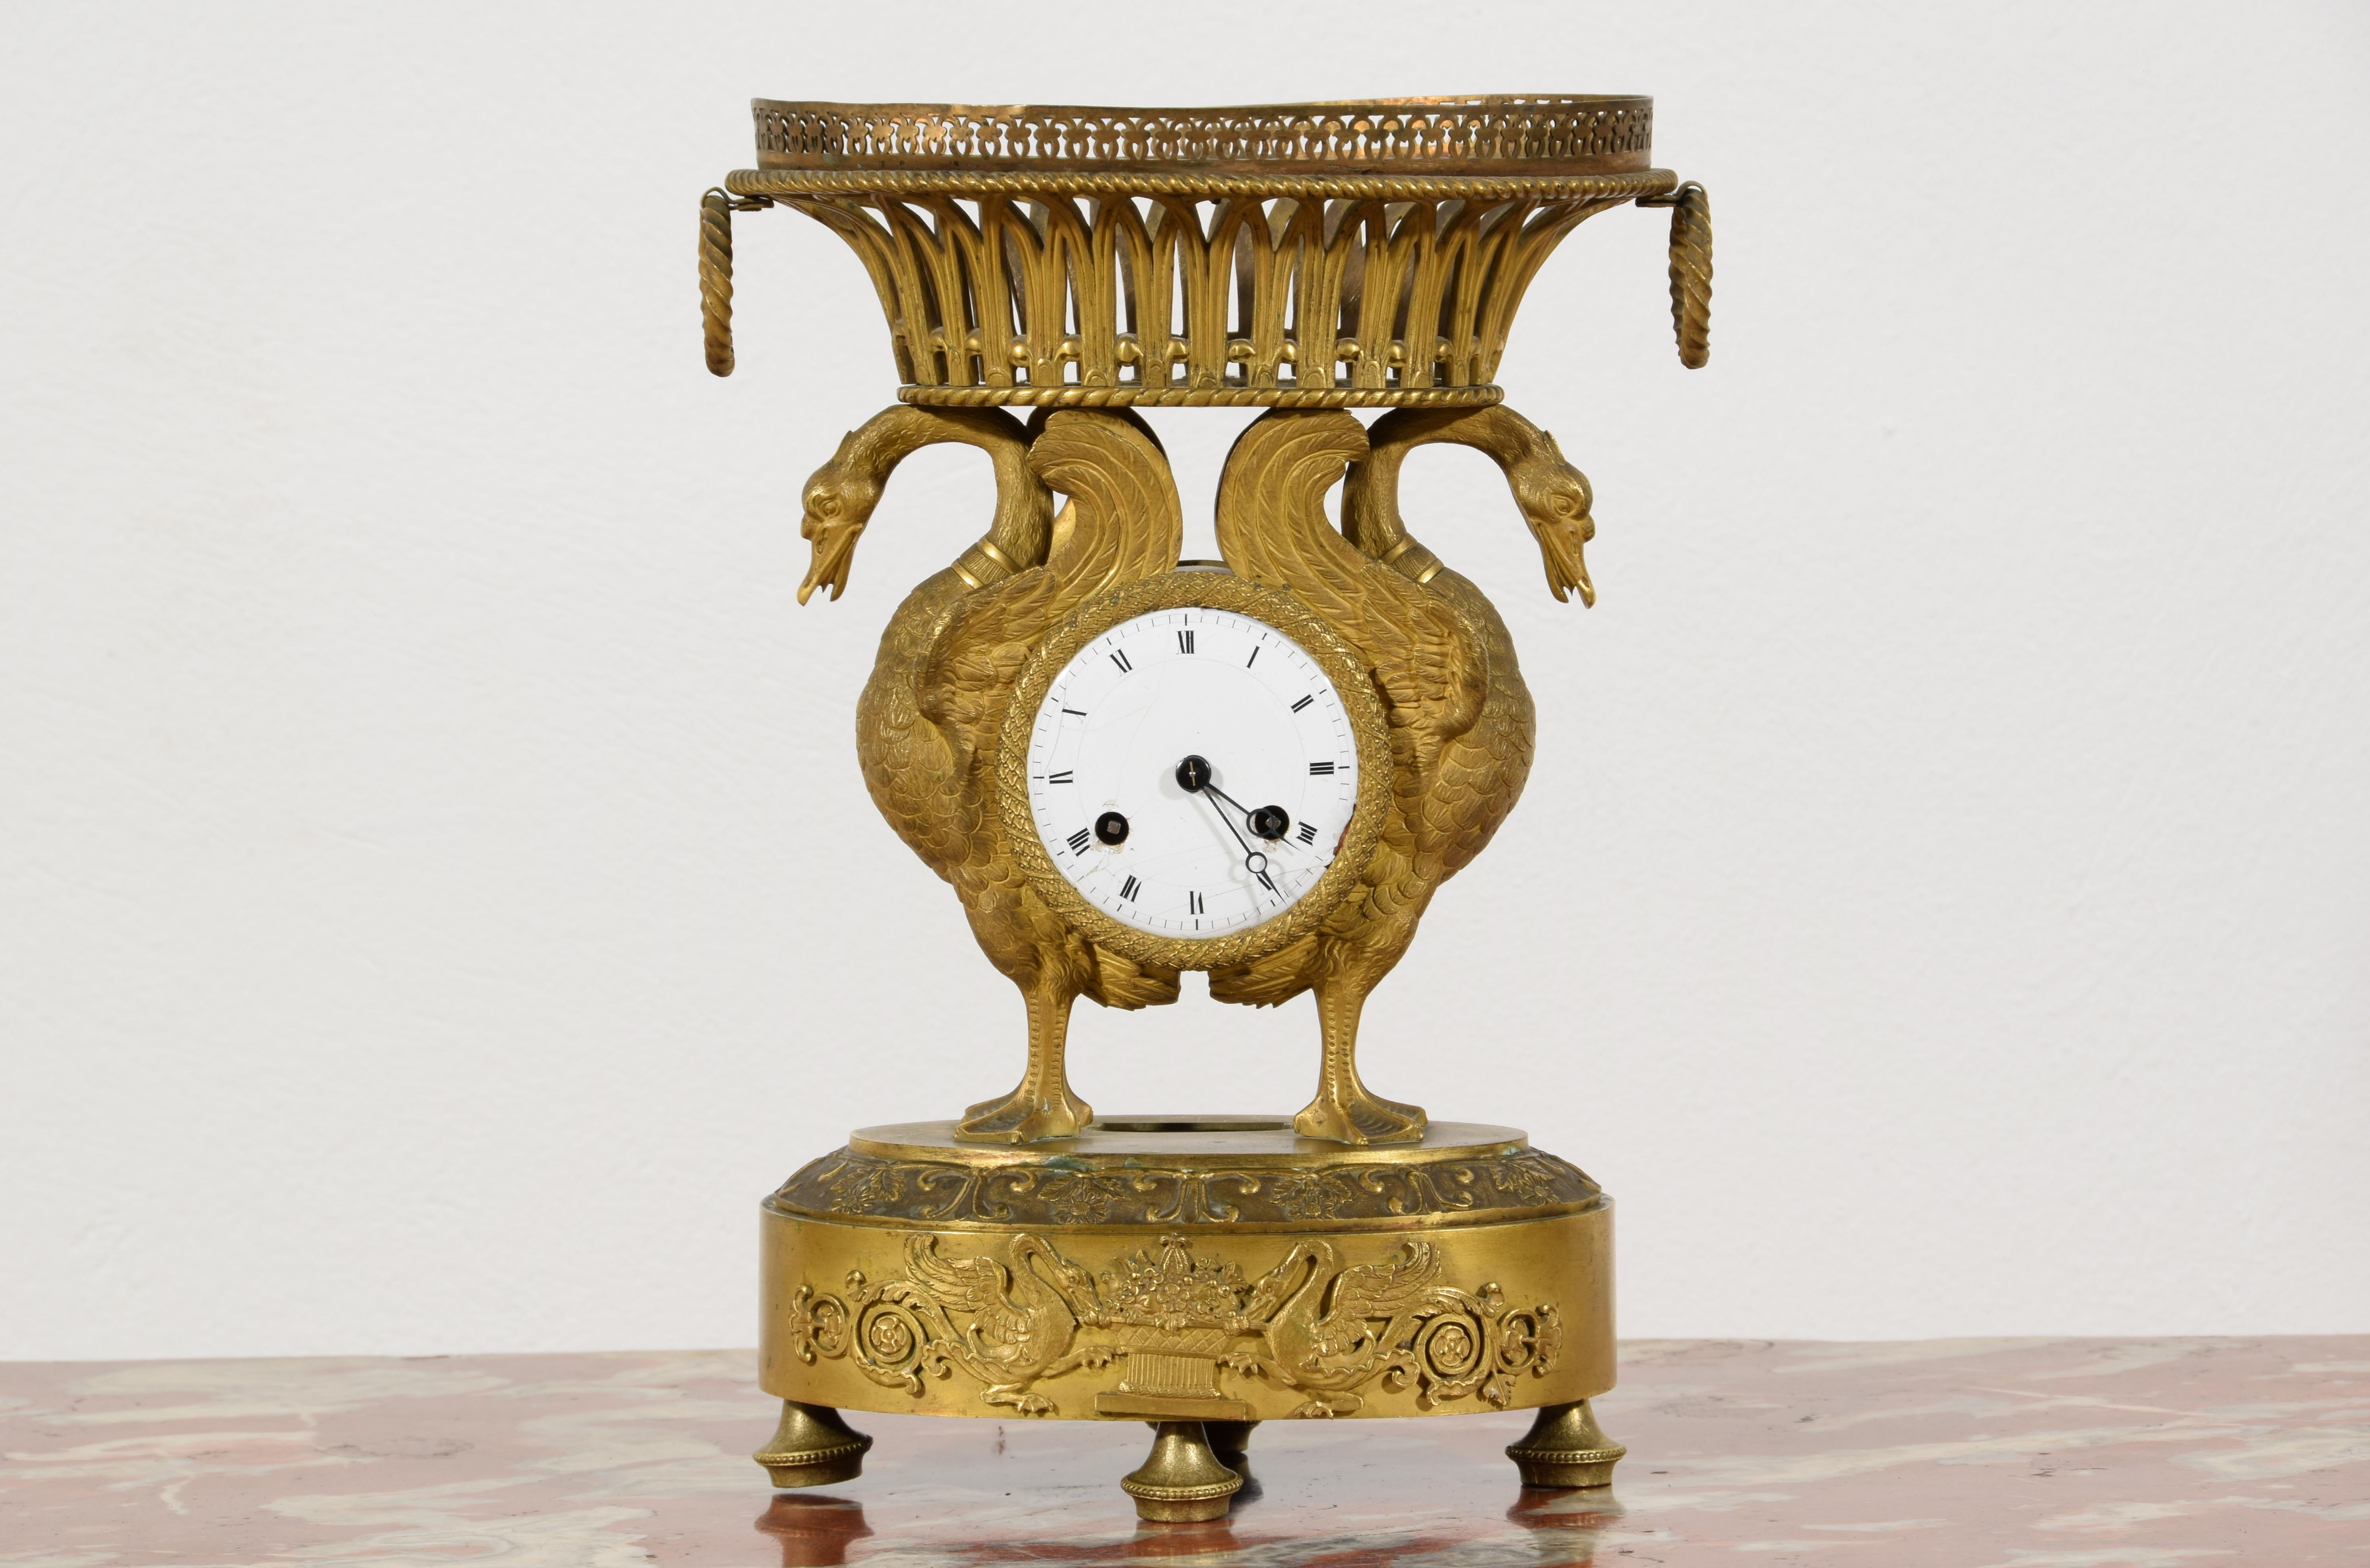 Pendule de table en bronze ciselé et doré, 19e siècle, France

Cette horloge de table a été réalisée en bronze ciselé et doré au début du XIXe siècle en France, à l'époque de l'Empire. La structure en bronze se compose d'une partie centrale, dans